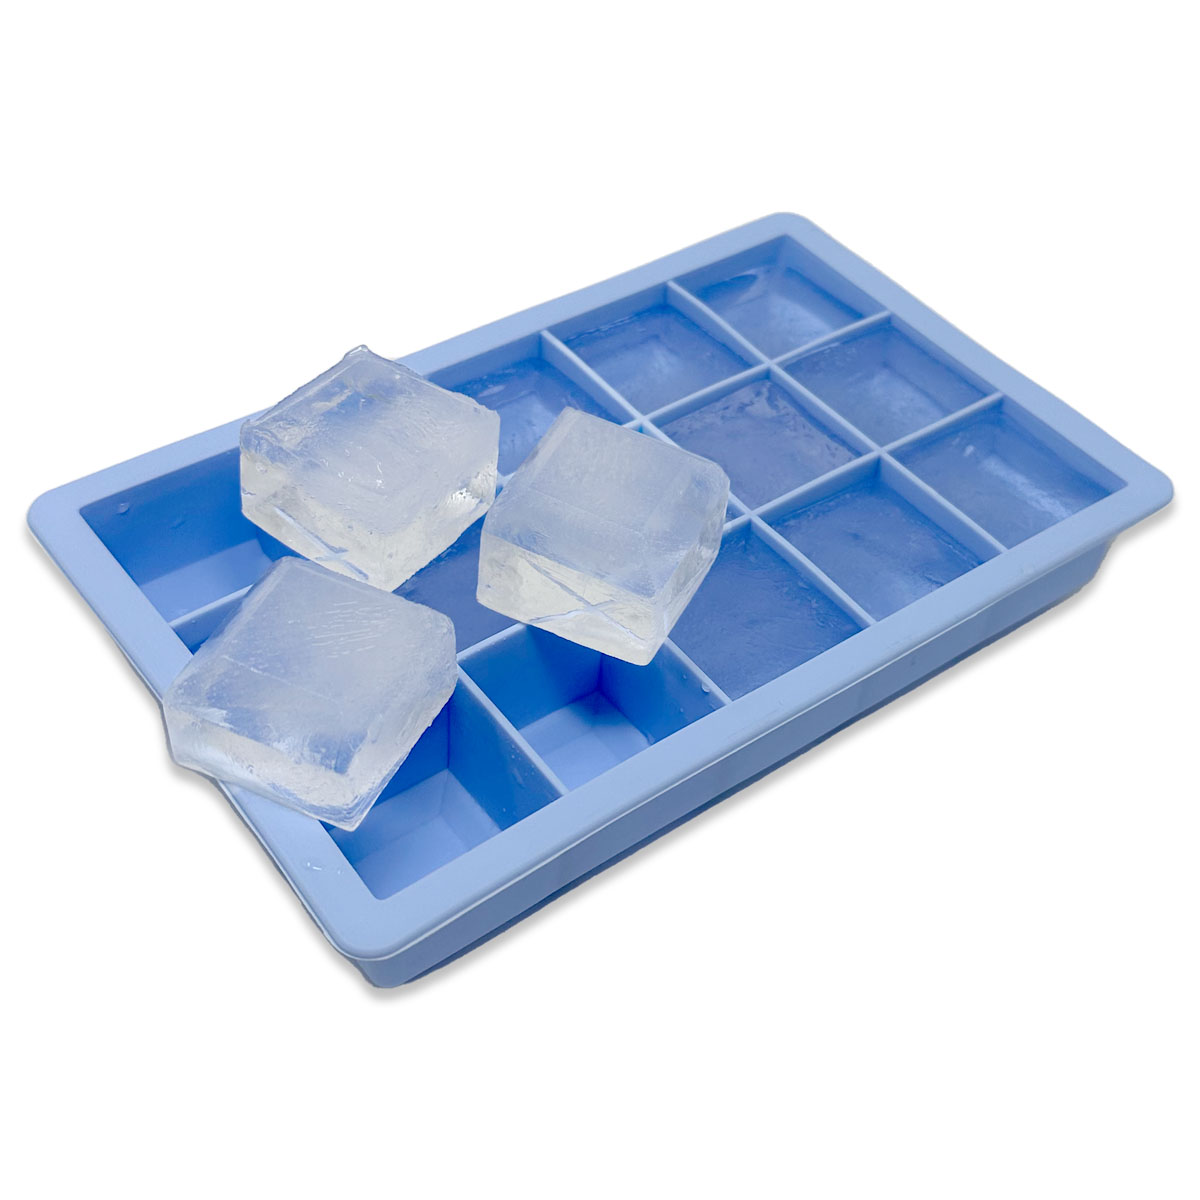 XXL Silikon Eiswürfelform für große Eiswürfel Jumbowürfel Riesenwürfel Eiswürfelbehälter Blau